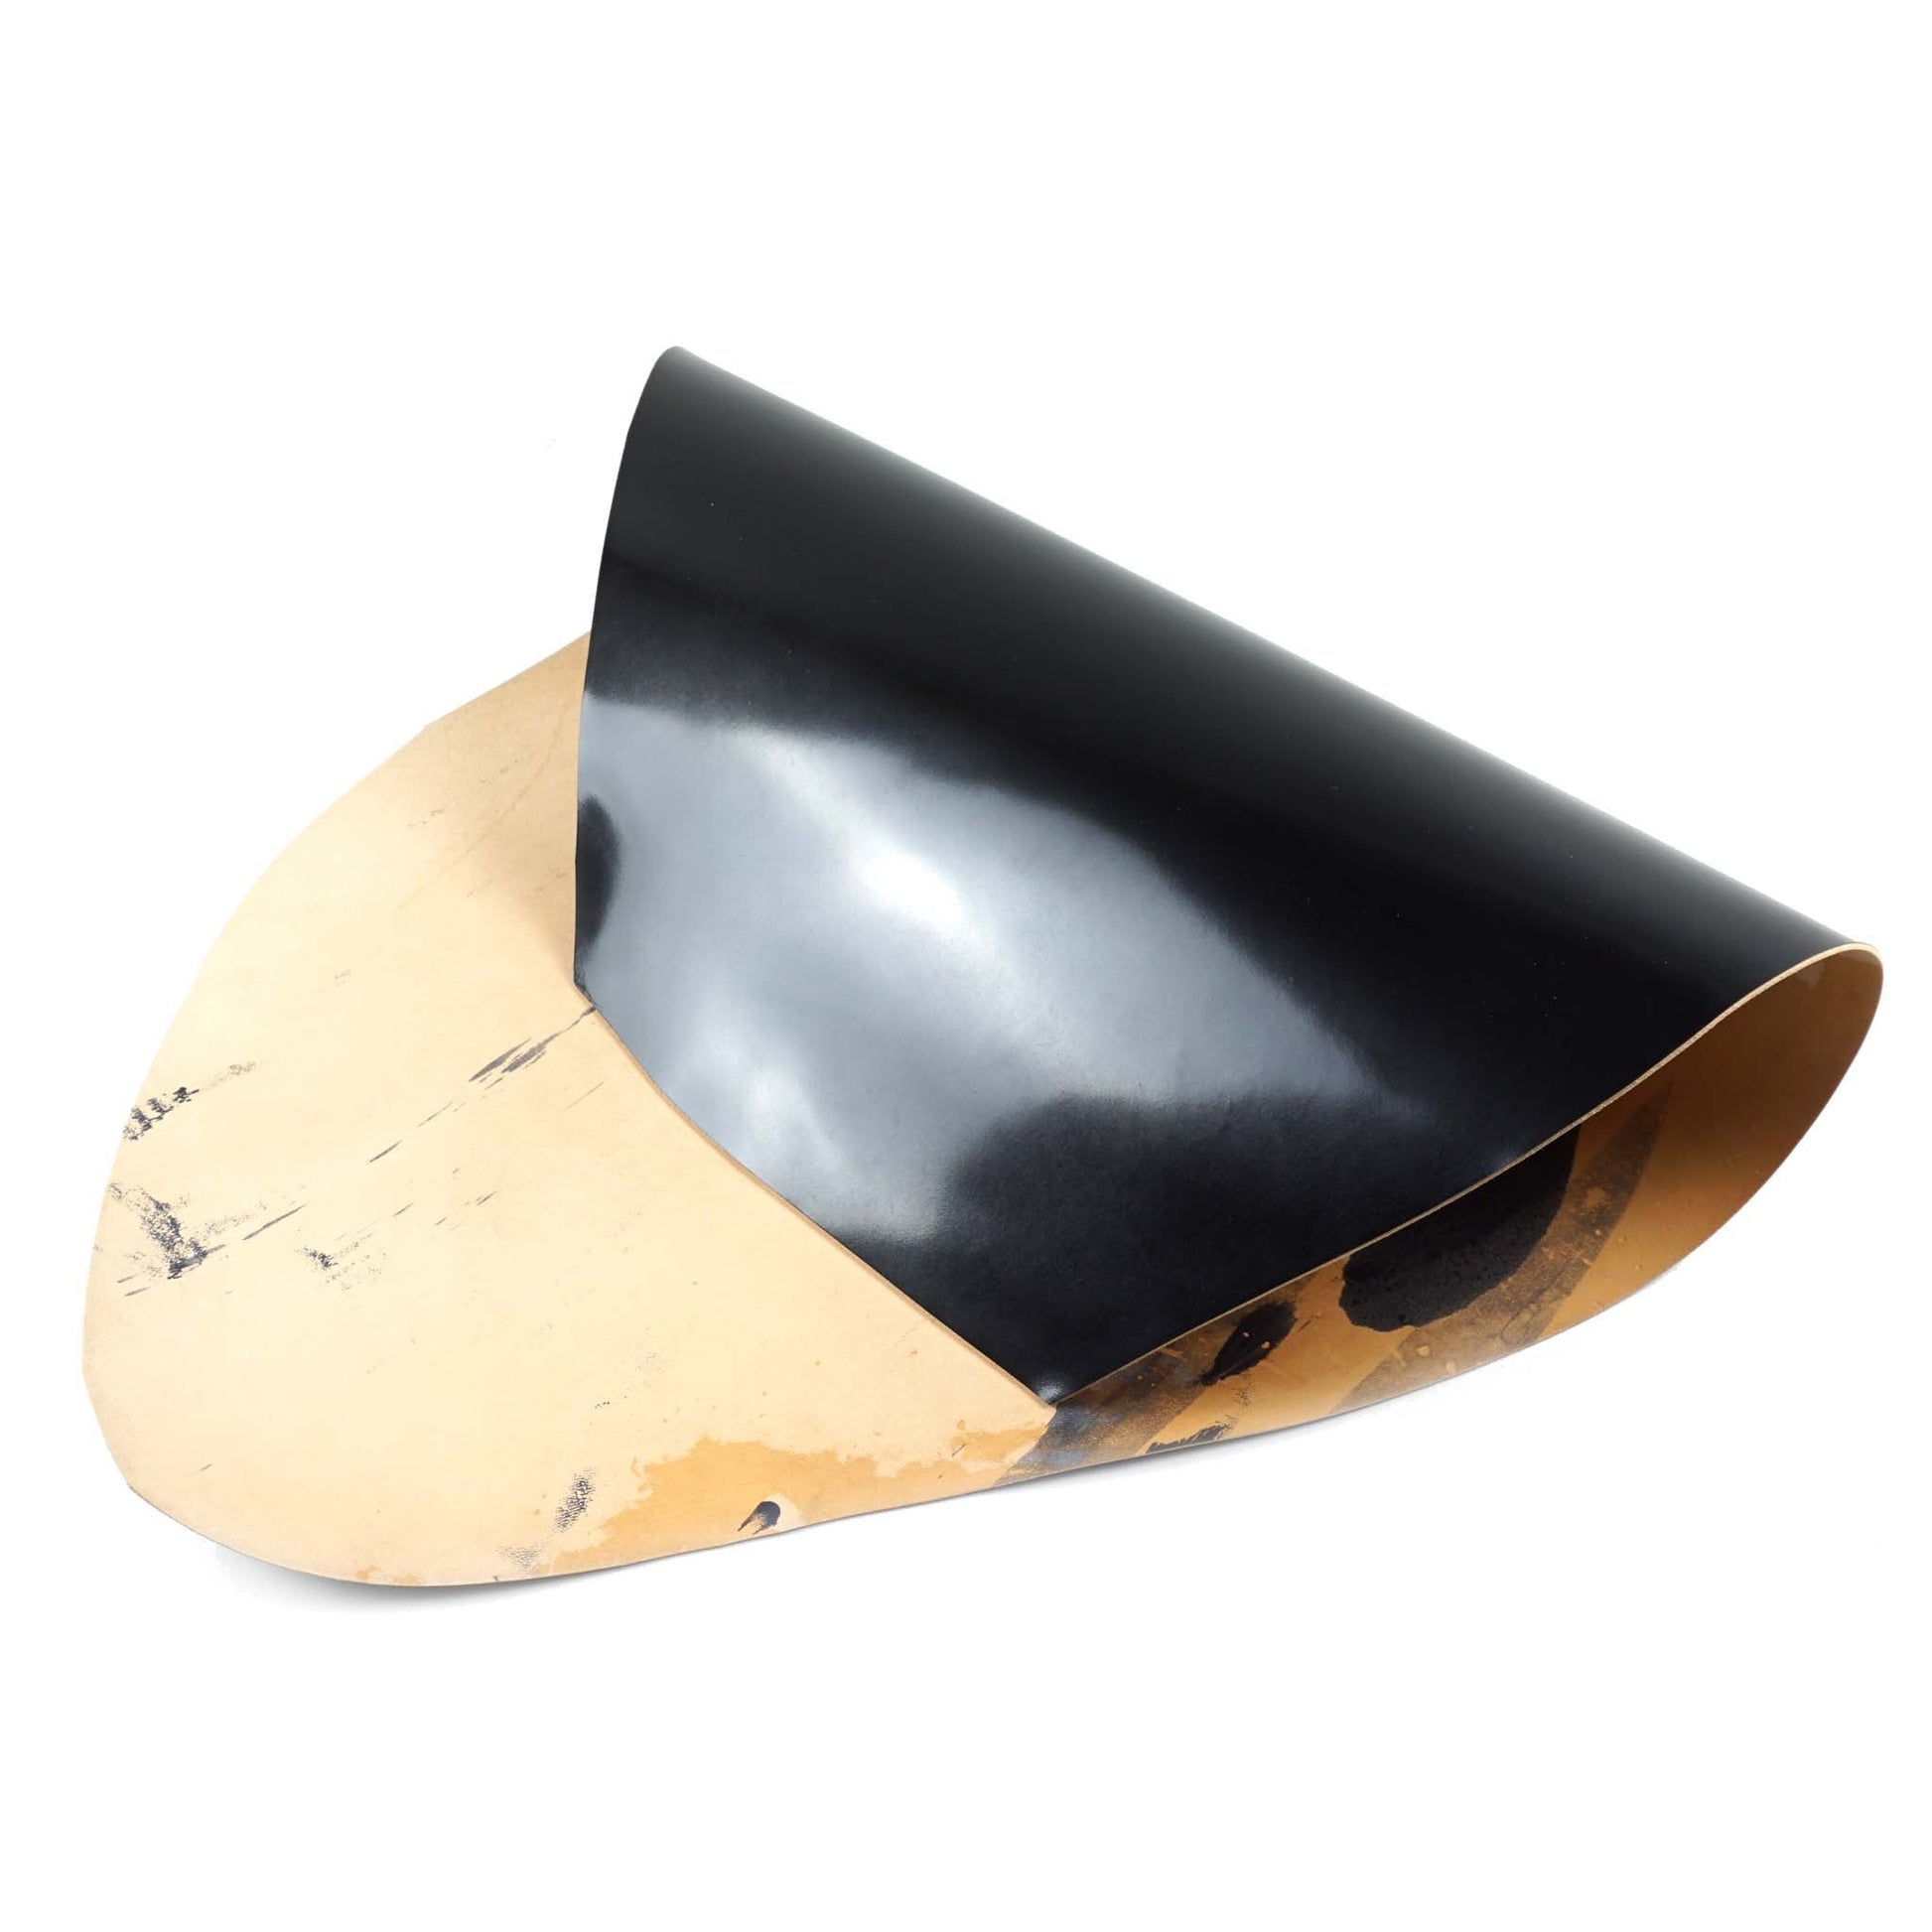 Rocado shell cordovan Classic finish color Black flipped